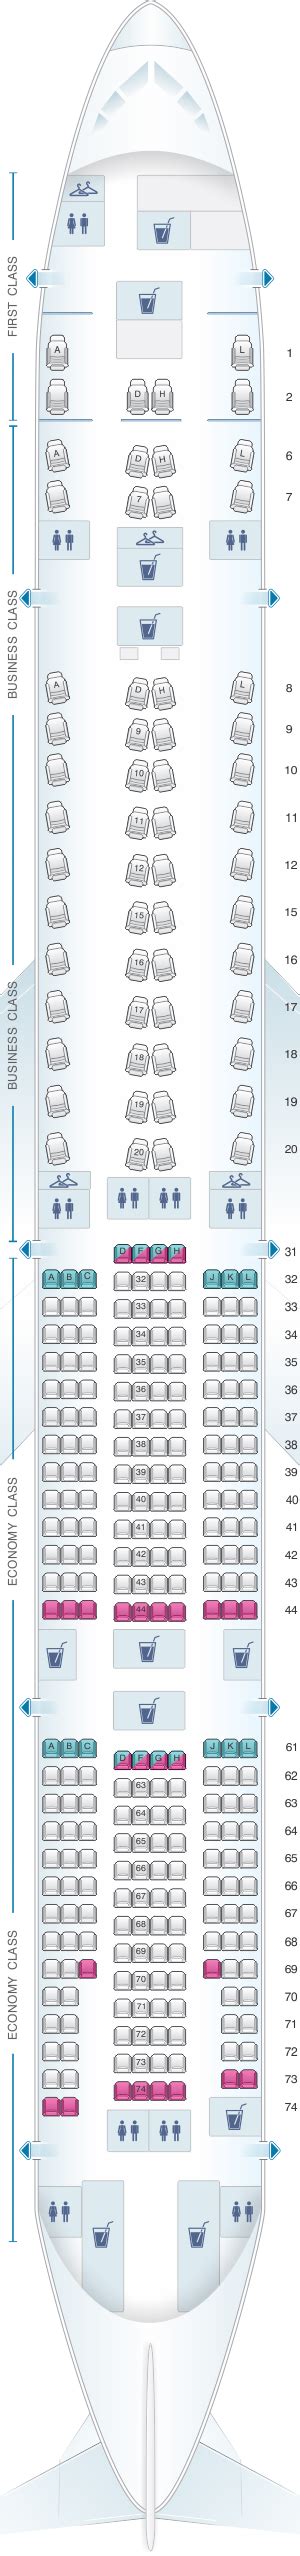 Air China Boeing 777 300er Seat Map Tutor Suhu